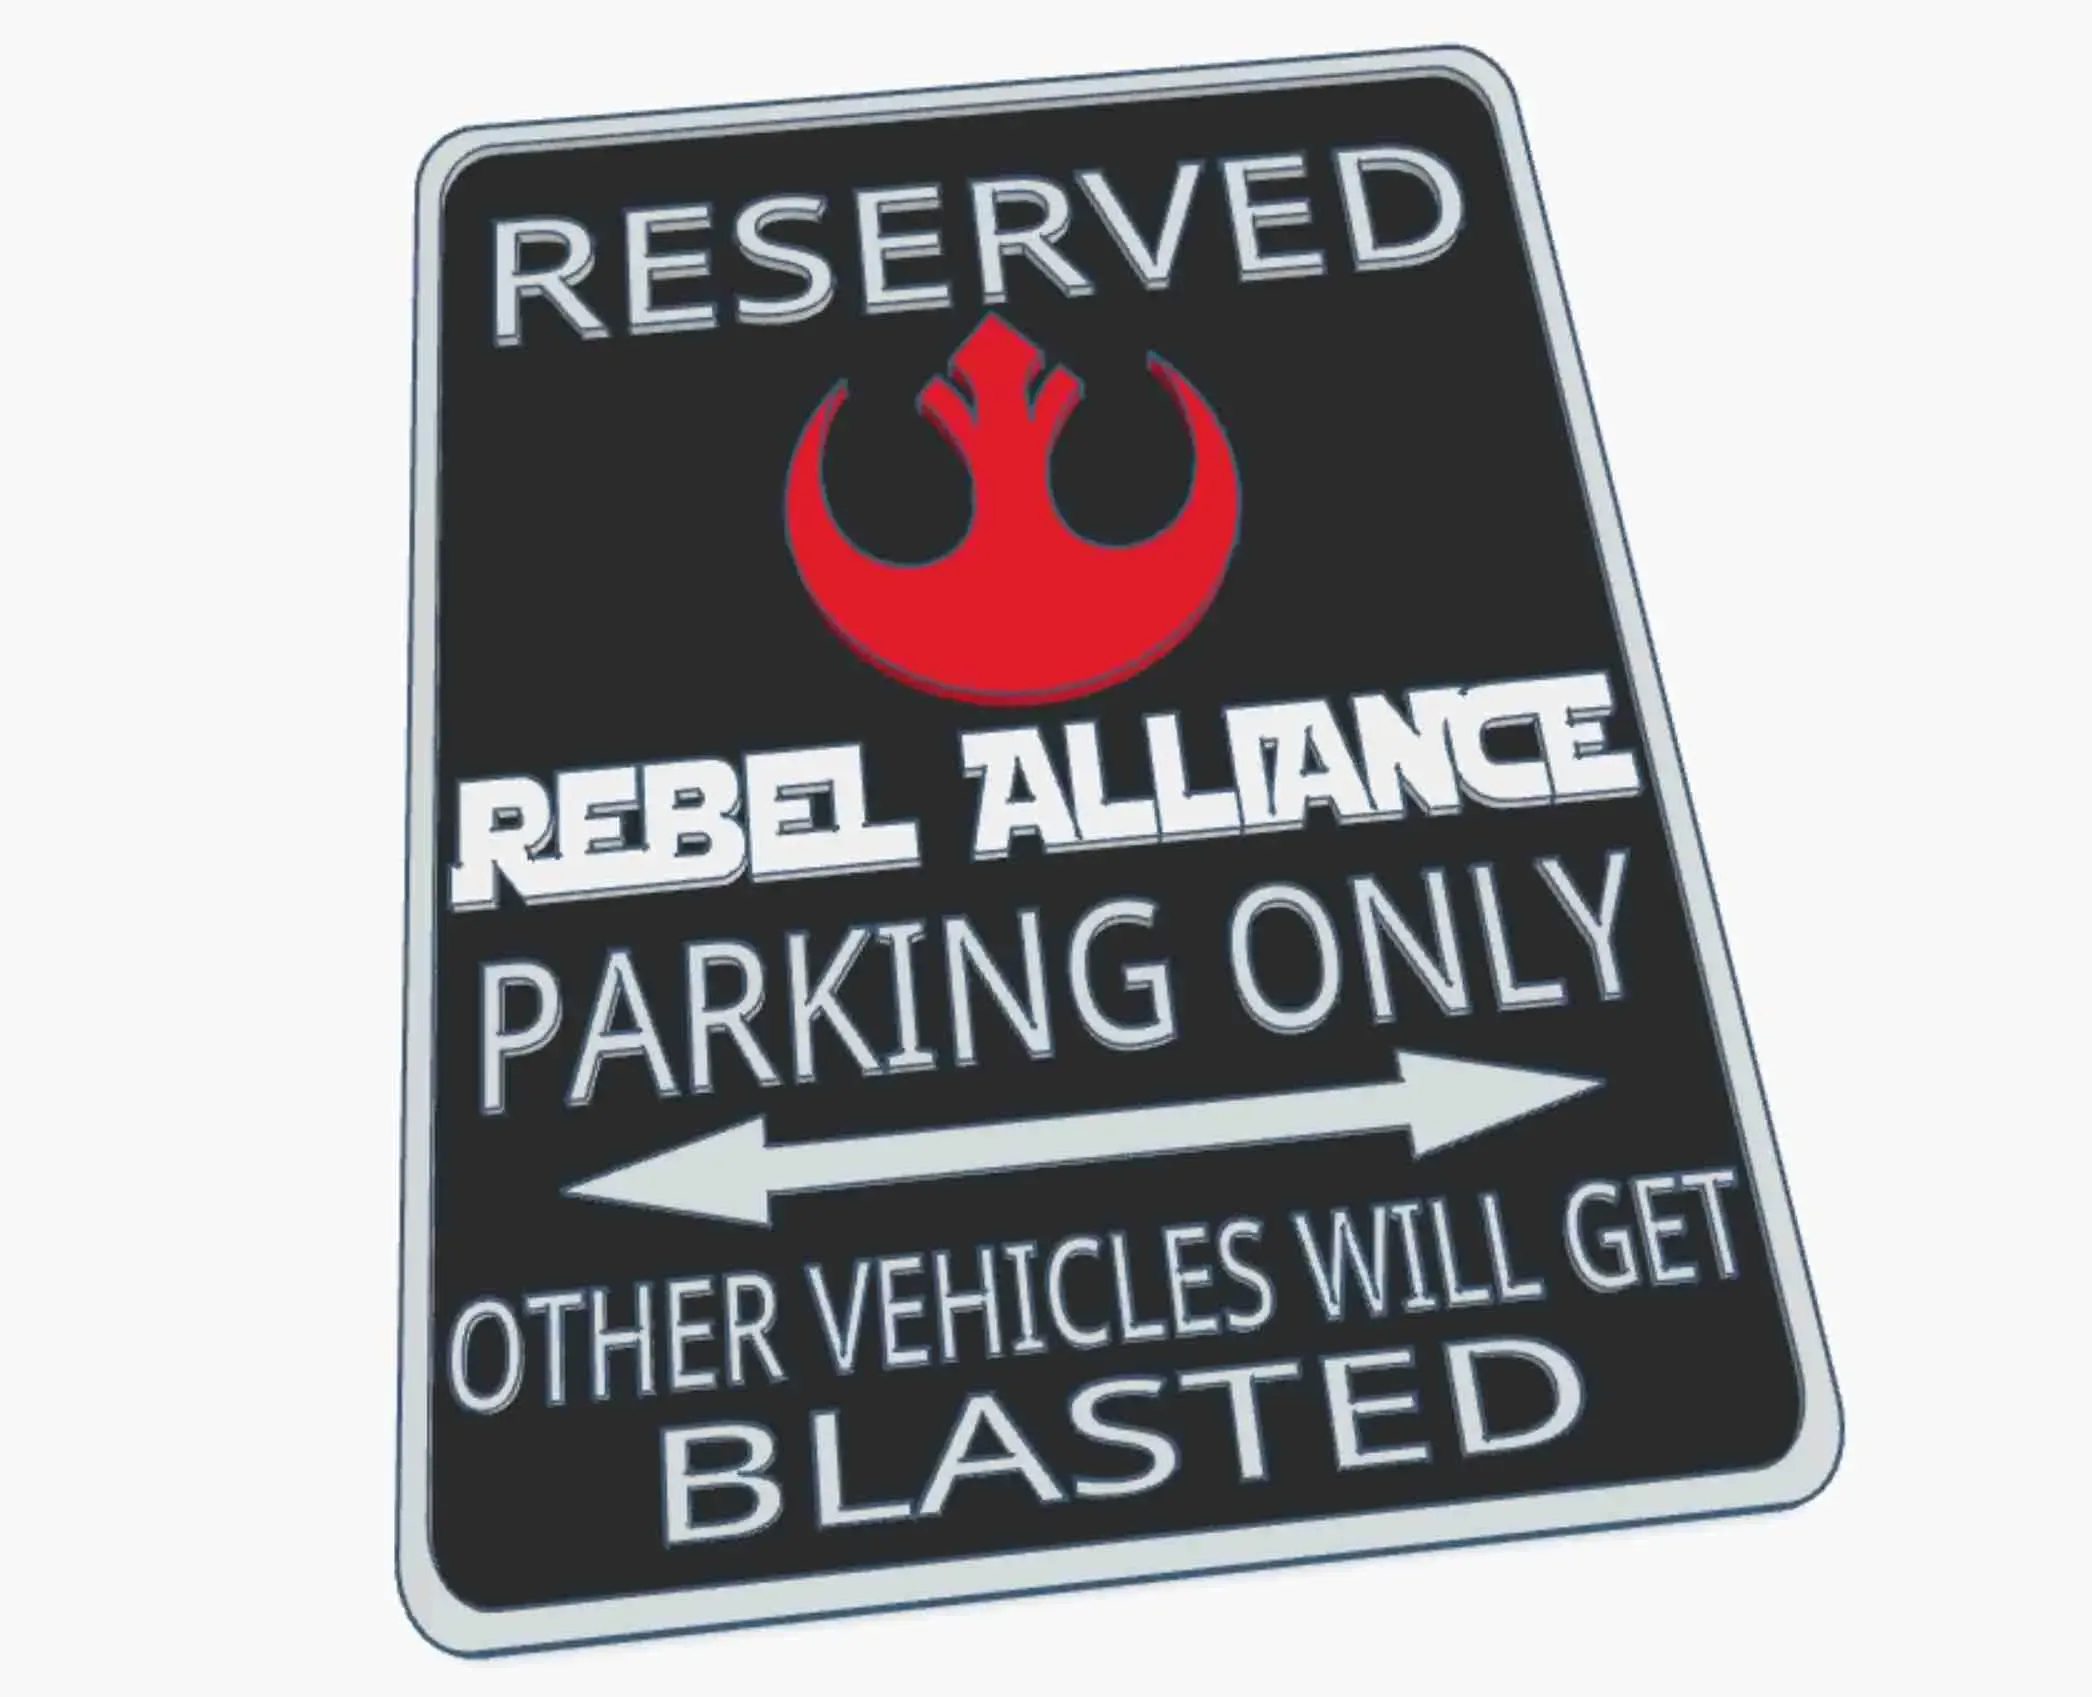 Rebel Alliance Star Wars Rebellion Fun Parking Warning Sign